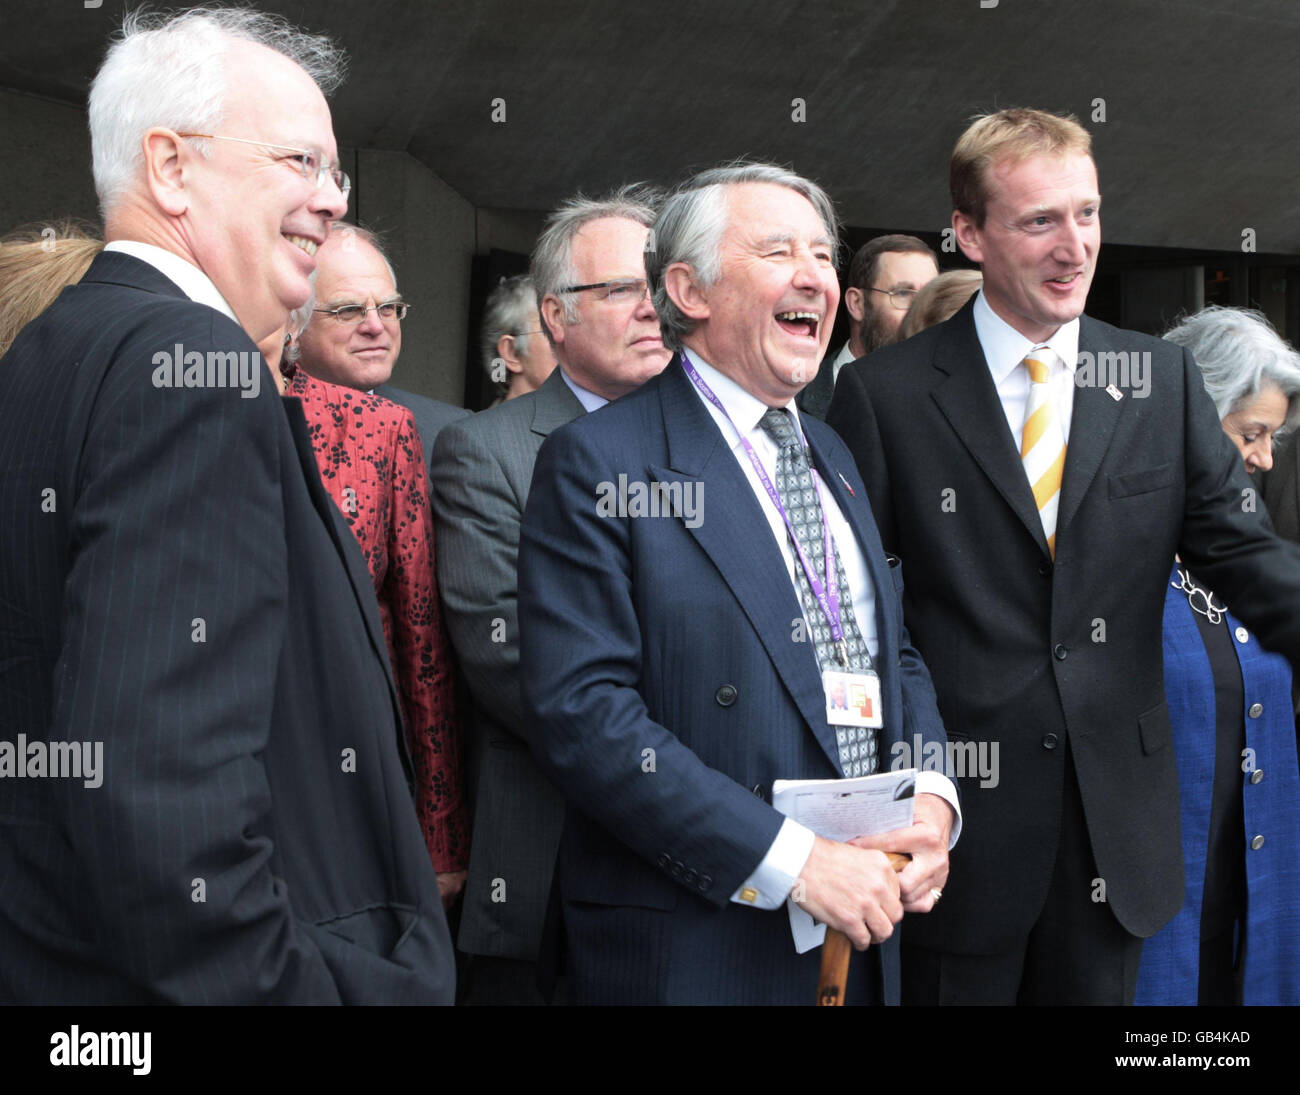 Der Vorsitzende der Liberaldemokraten in Schottland, Tavish Scott (rechts), begrüßt eine Delegation von 14 liberal-demokratischen Lords im schottischen parlament in Edinburgh. Zu den Gastkollegen gehören der ehemalige schottische Parteivorsitzende Lord Wallace (links) und der ehemalige Vorsitzende Lord Steel (Mitte). Stockfoto